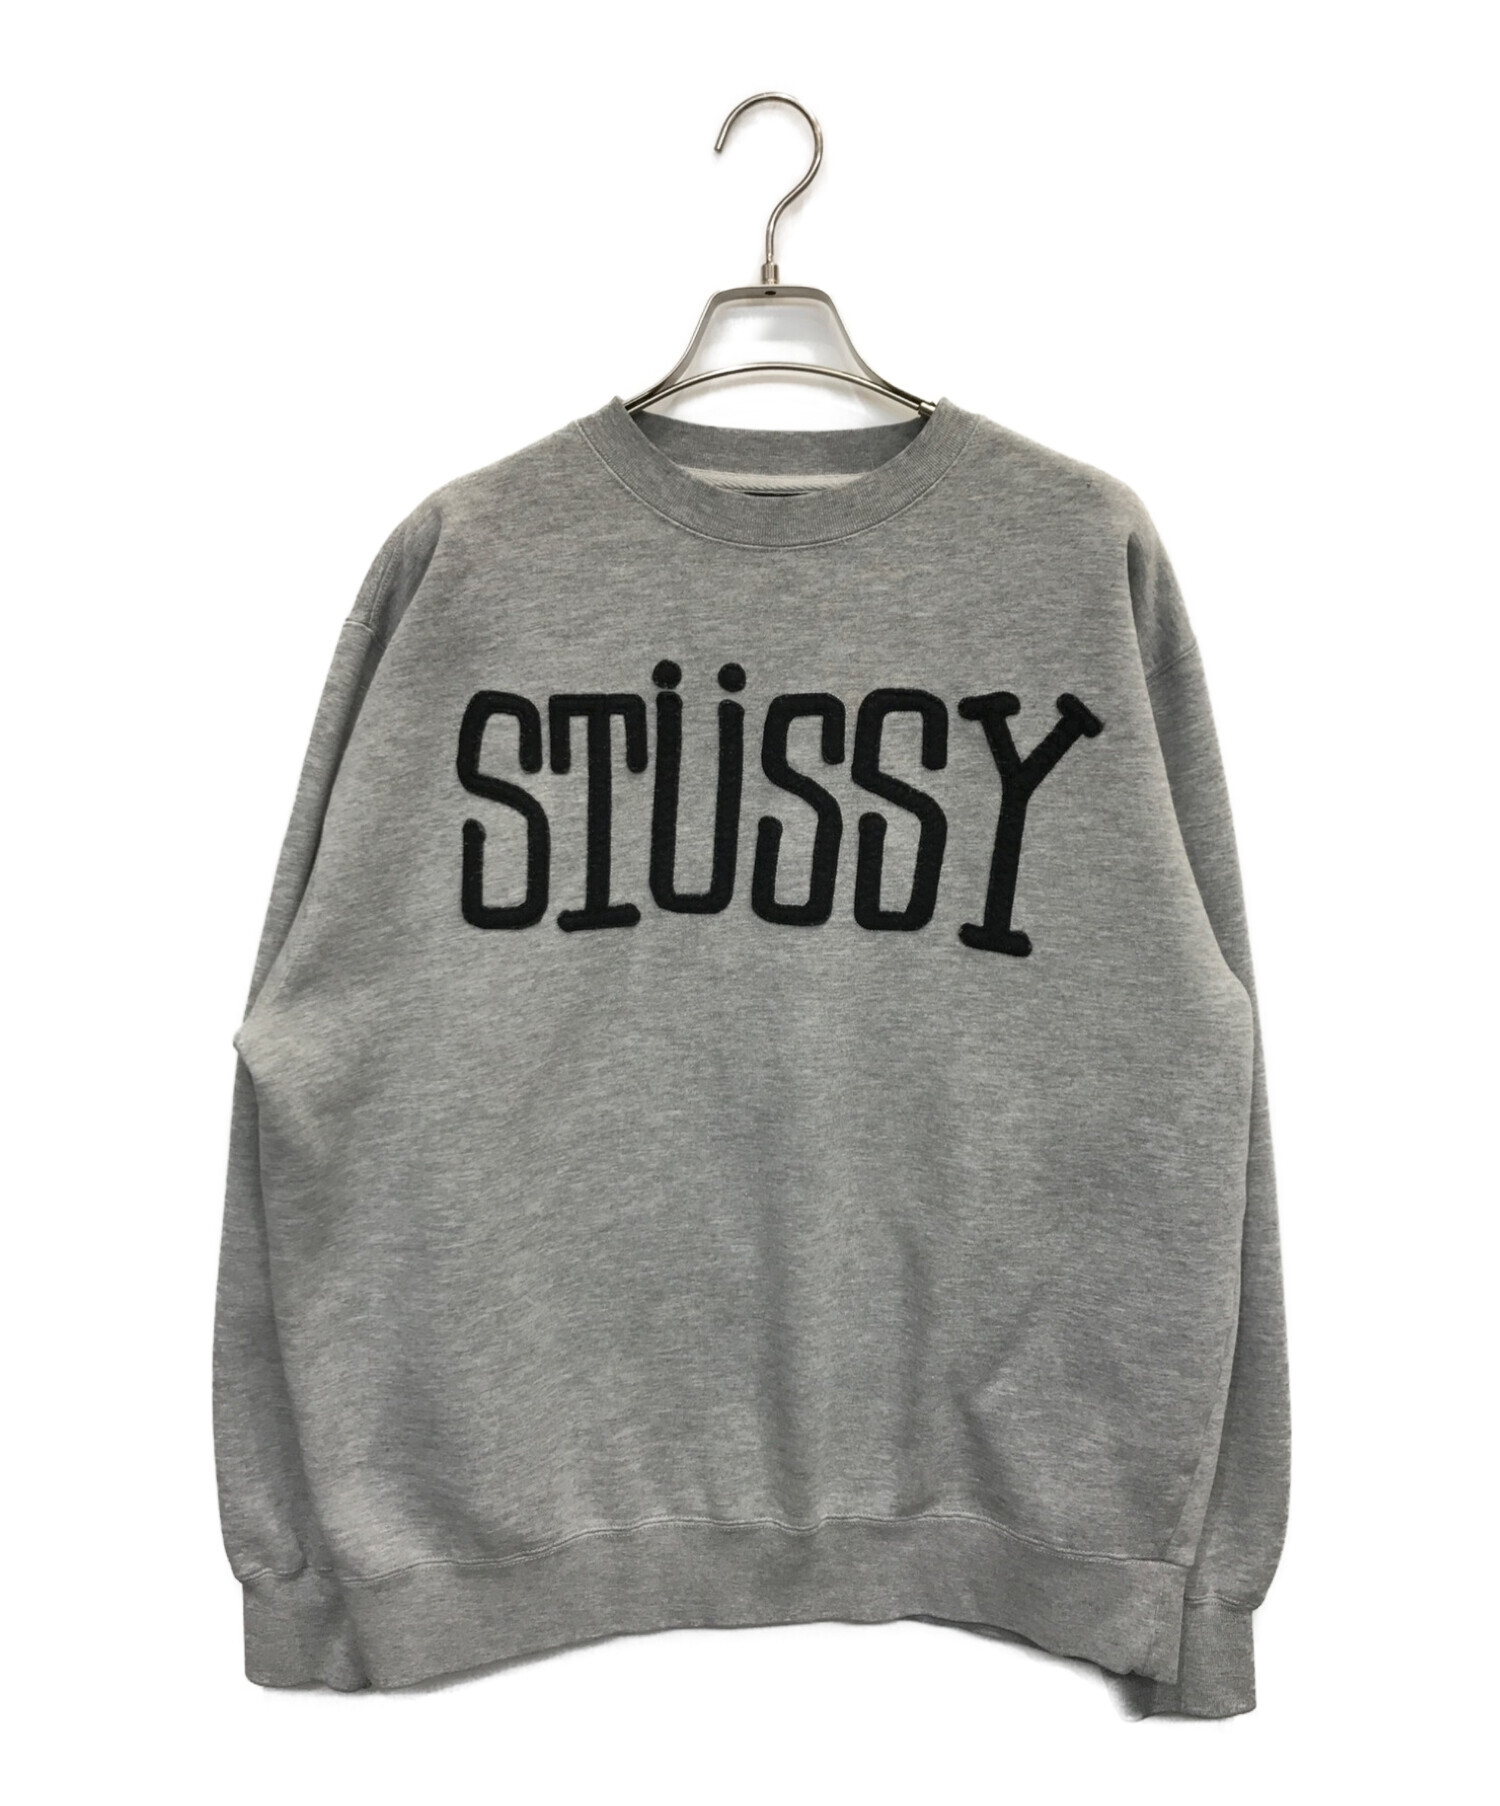 stussy (ステューシー) ロゴスウェット グレー サイズ:M